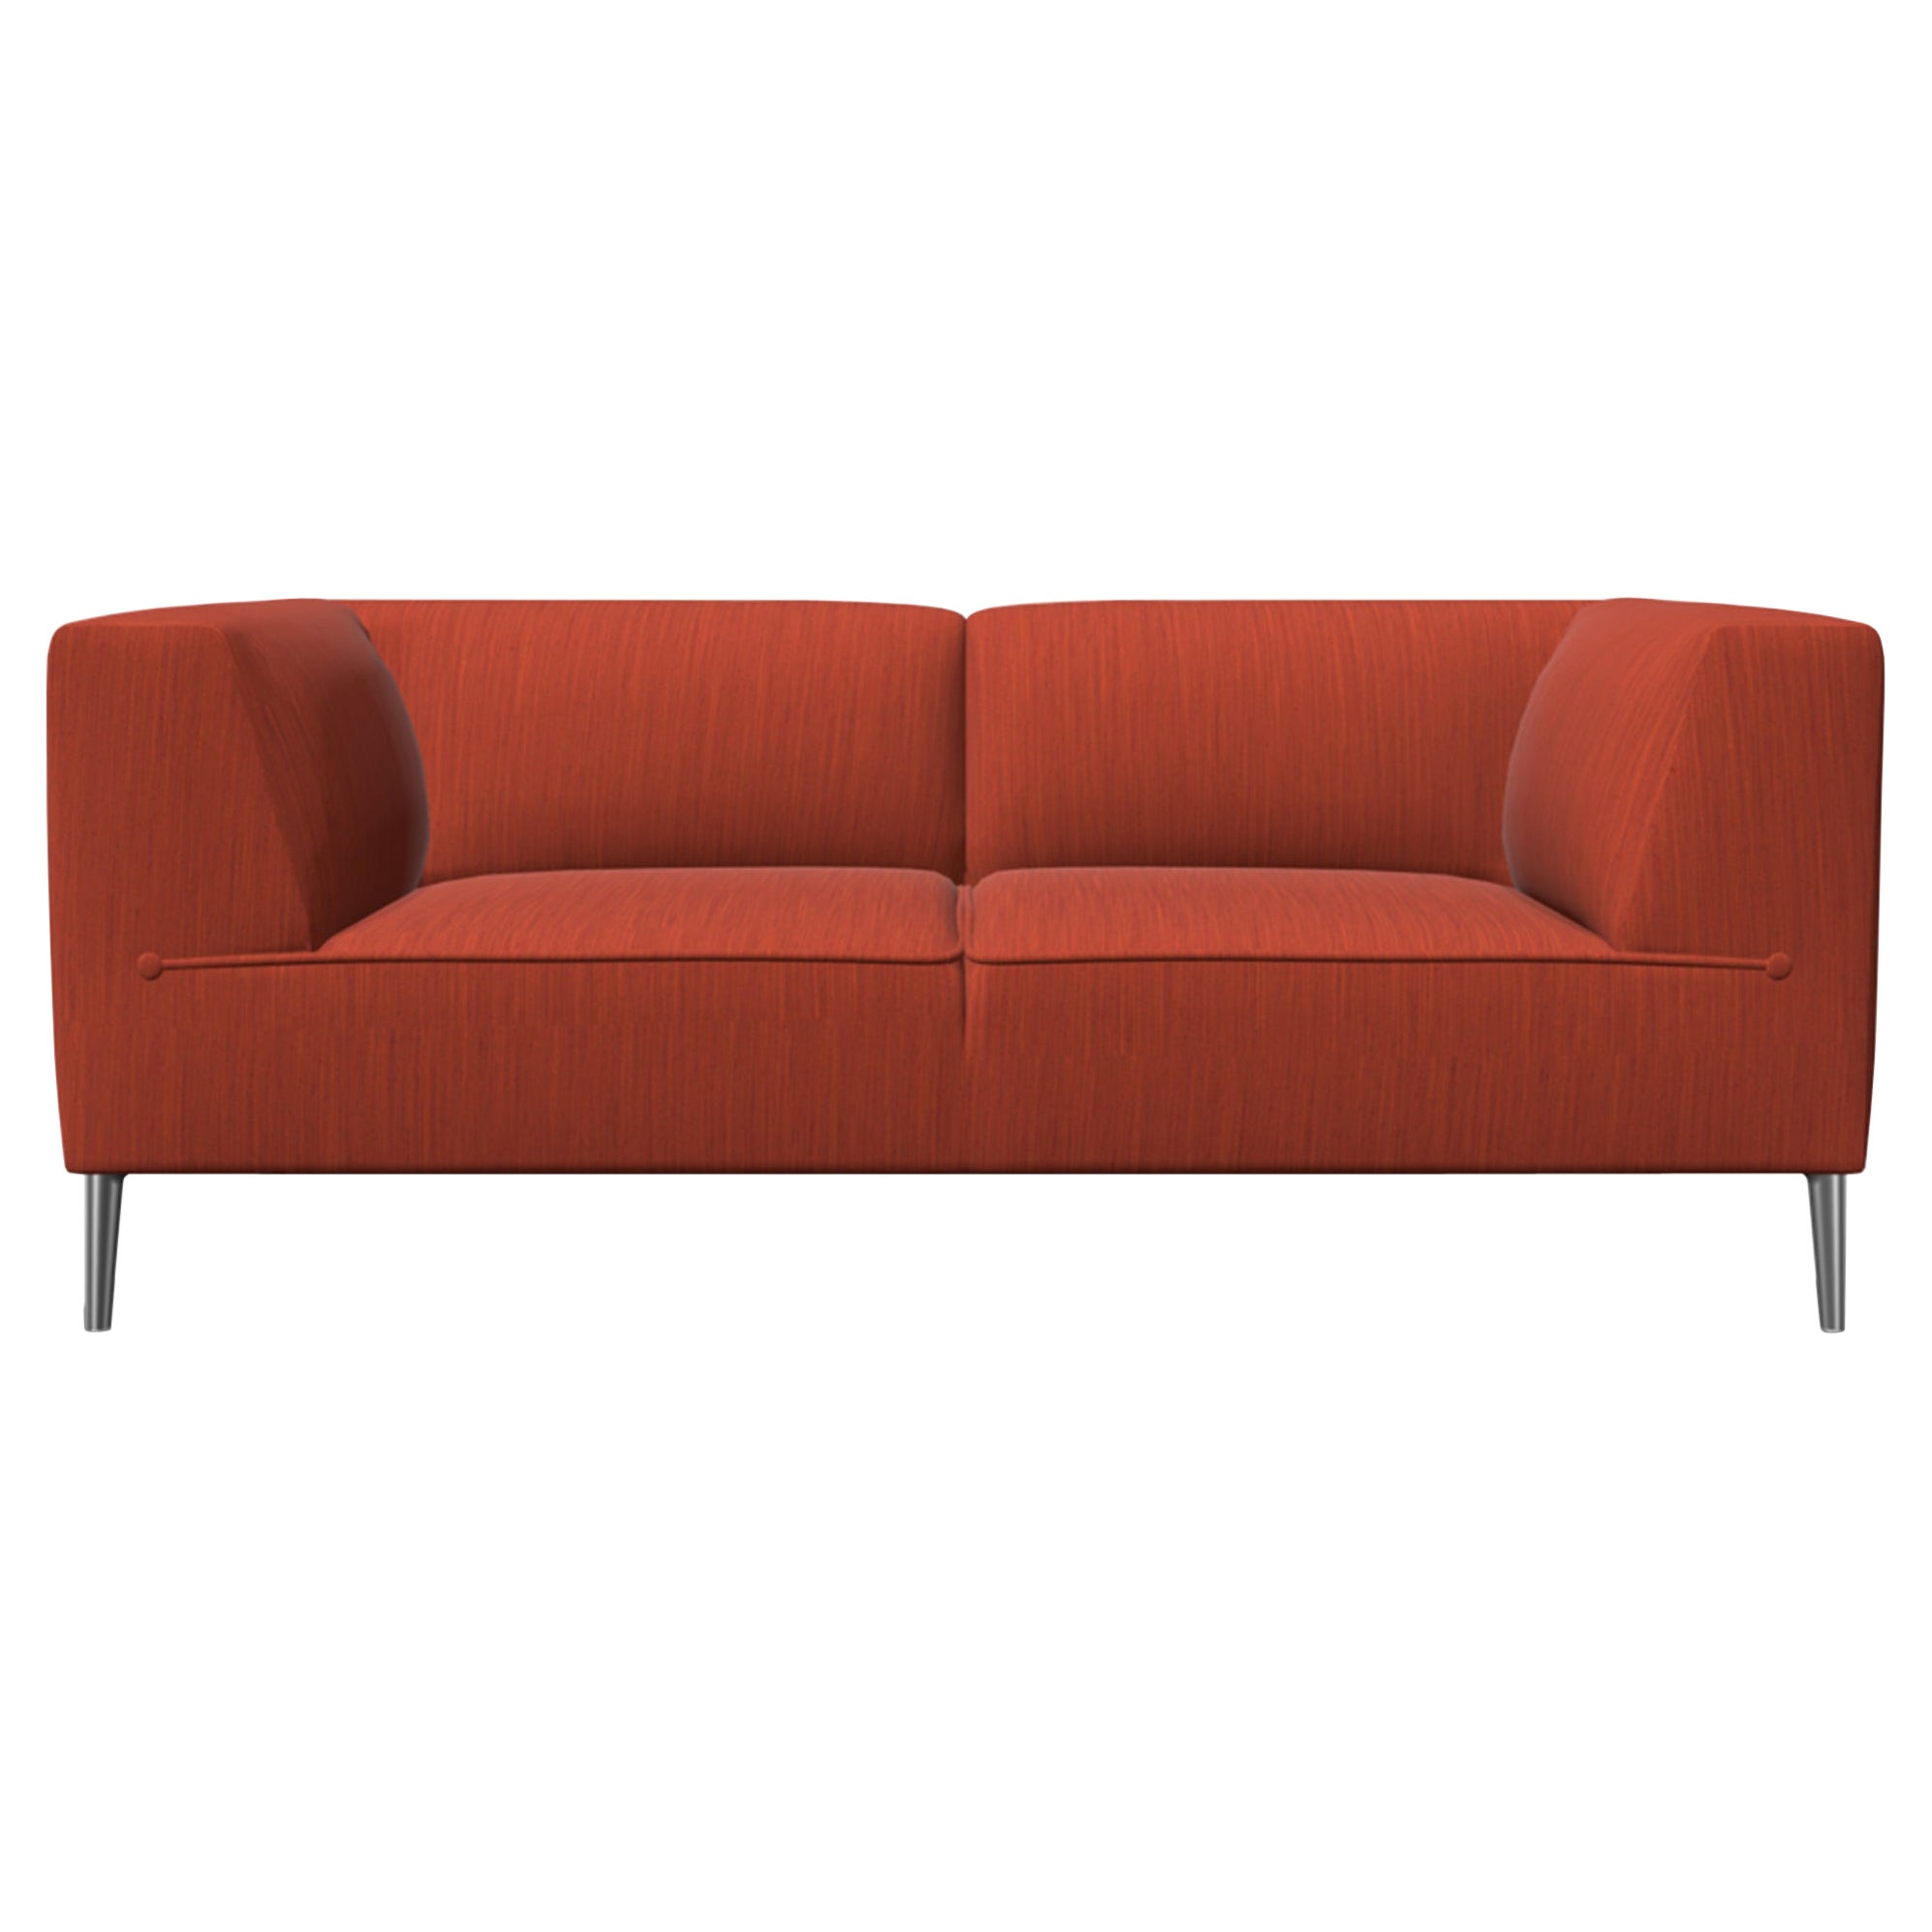 Moooi Zweisitzer-Sofa mit extravaganter Polsterung und polsterten Aluminiumfüßen So gut in Flamboyant